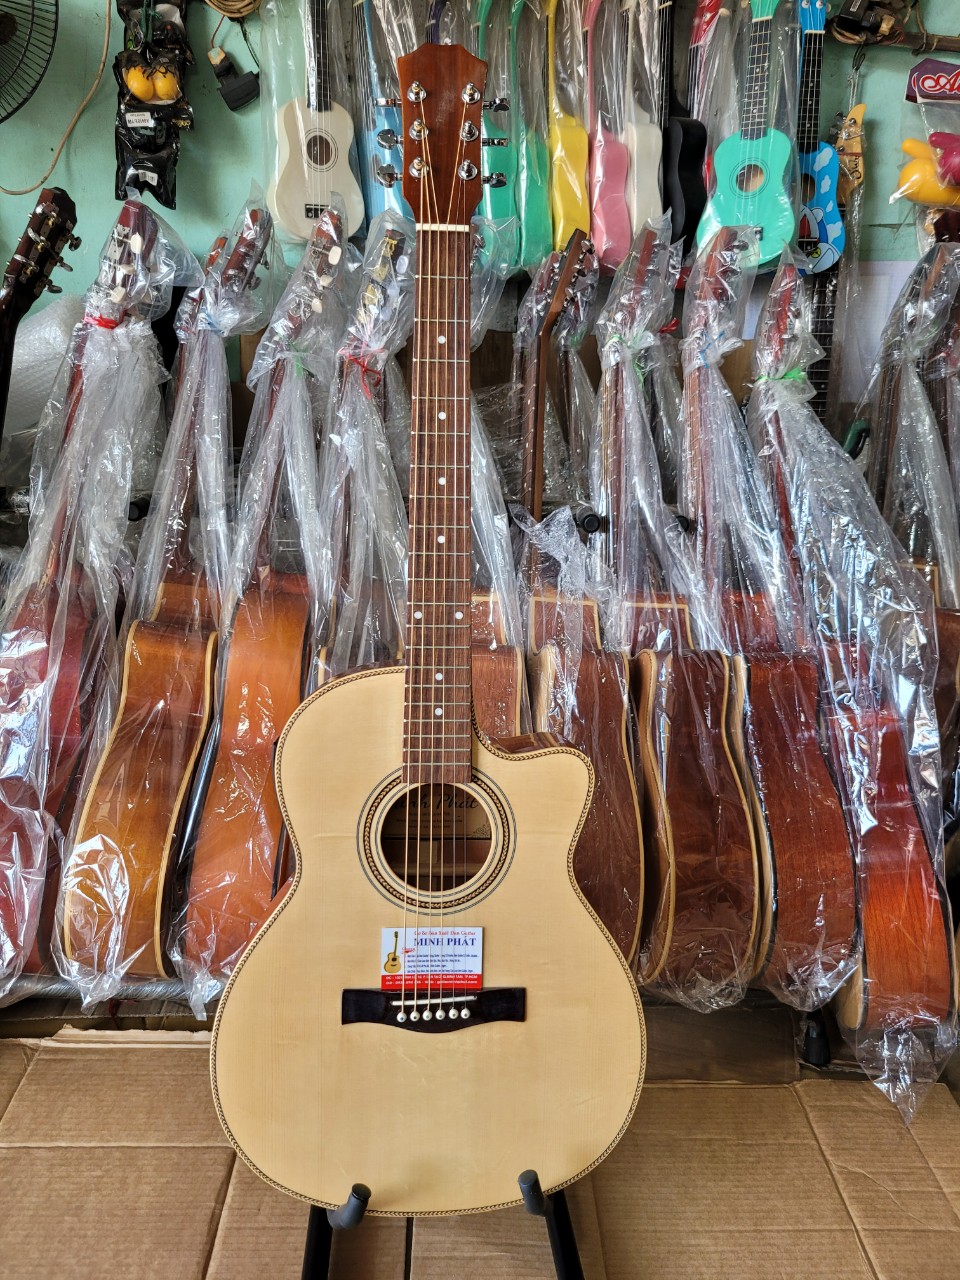 Bán đàn guitar có eq tại TPHCM - Guitar Minh Phát